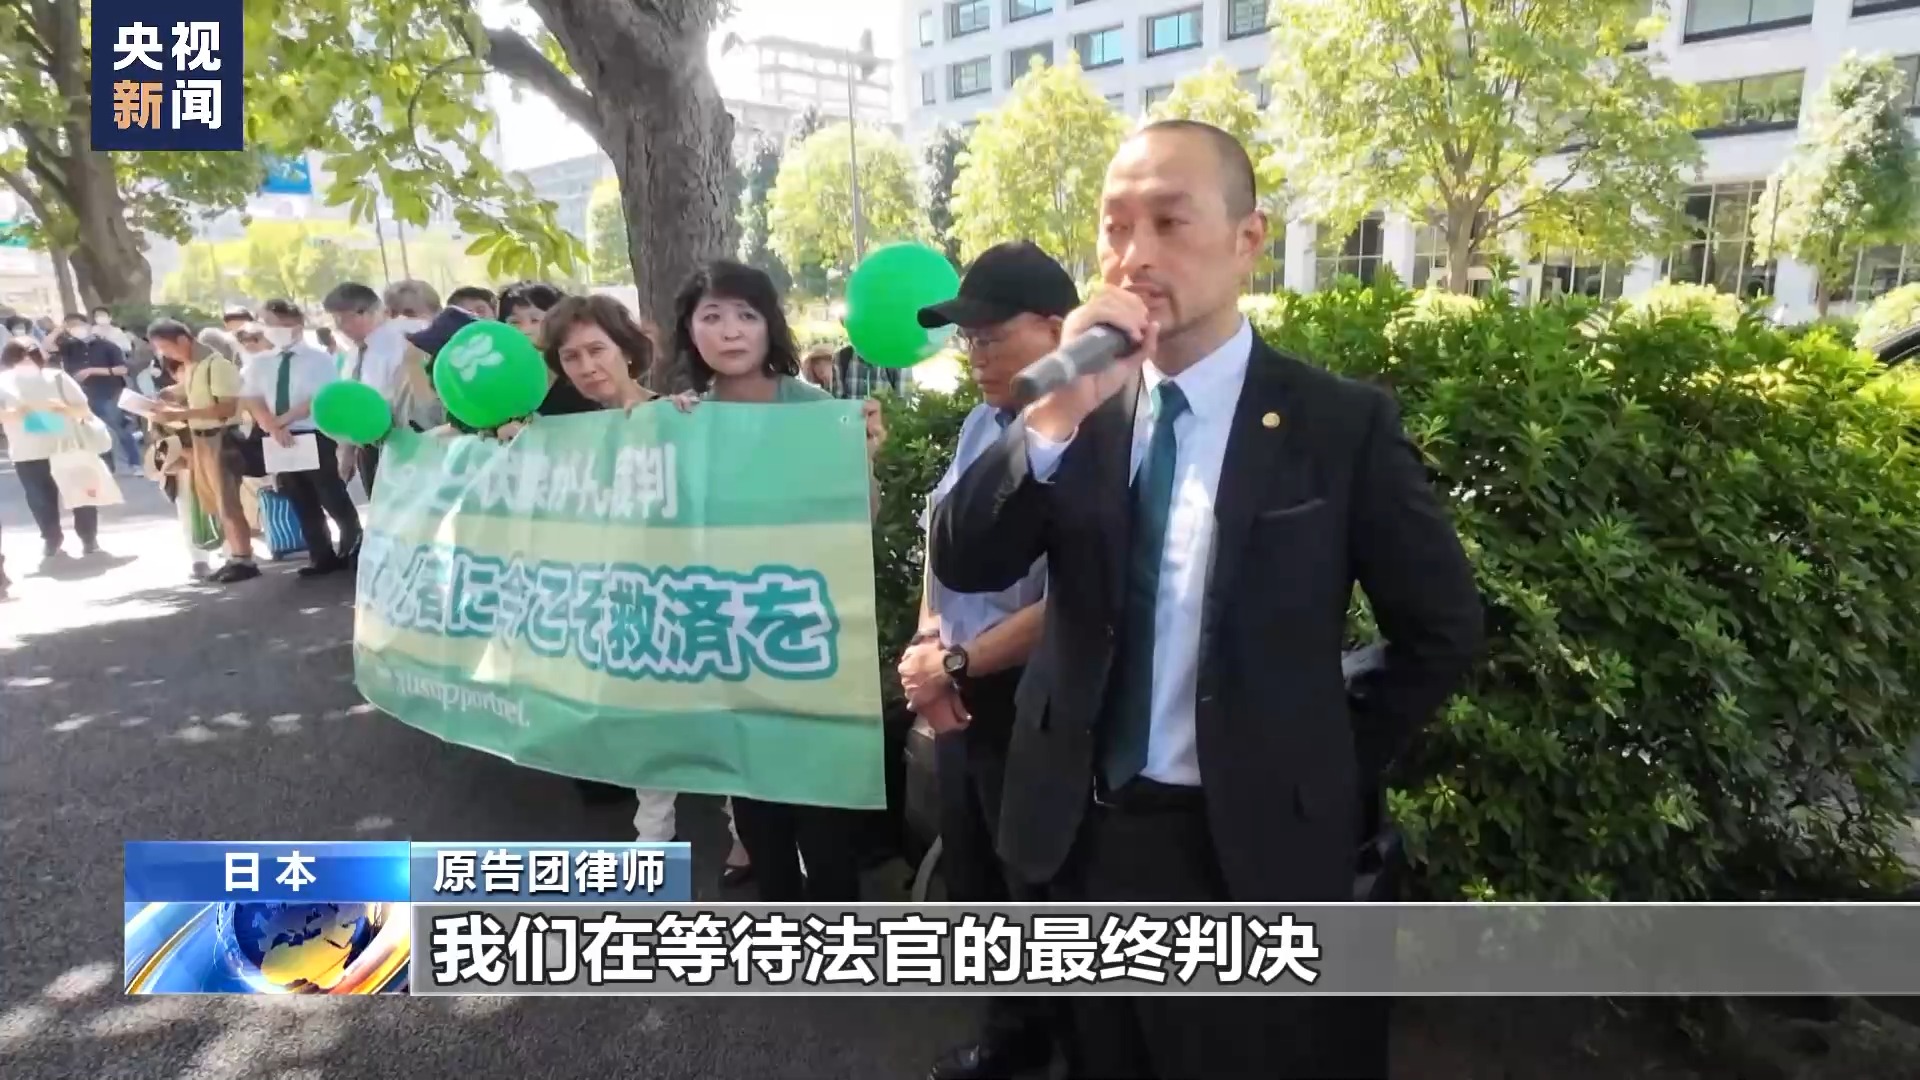 日本福岛县甲状腺癌患者状告东京电力公司 民众集会声援1